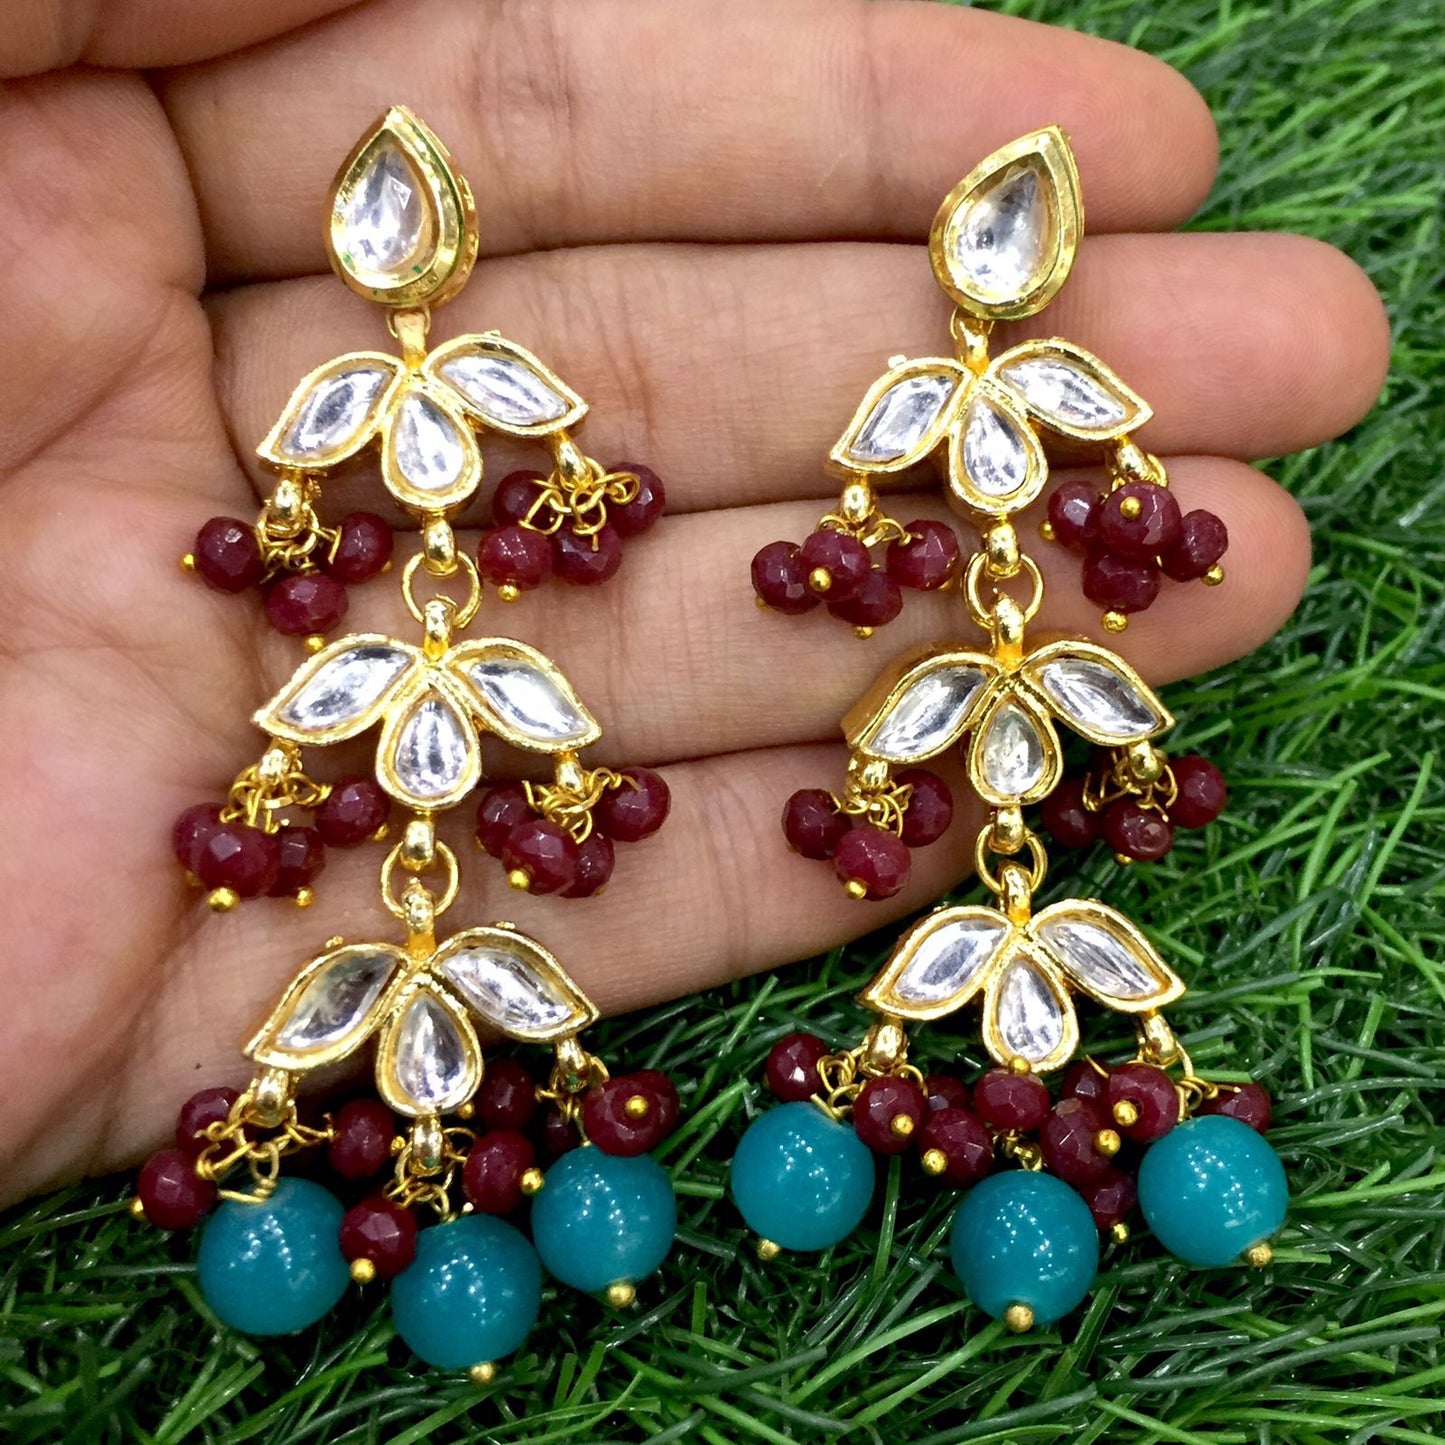 Kundan earrings 23445 - Vijay & Sons